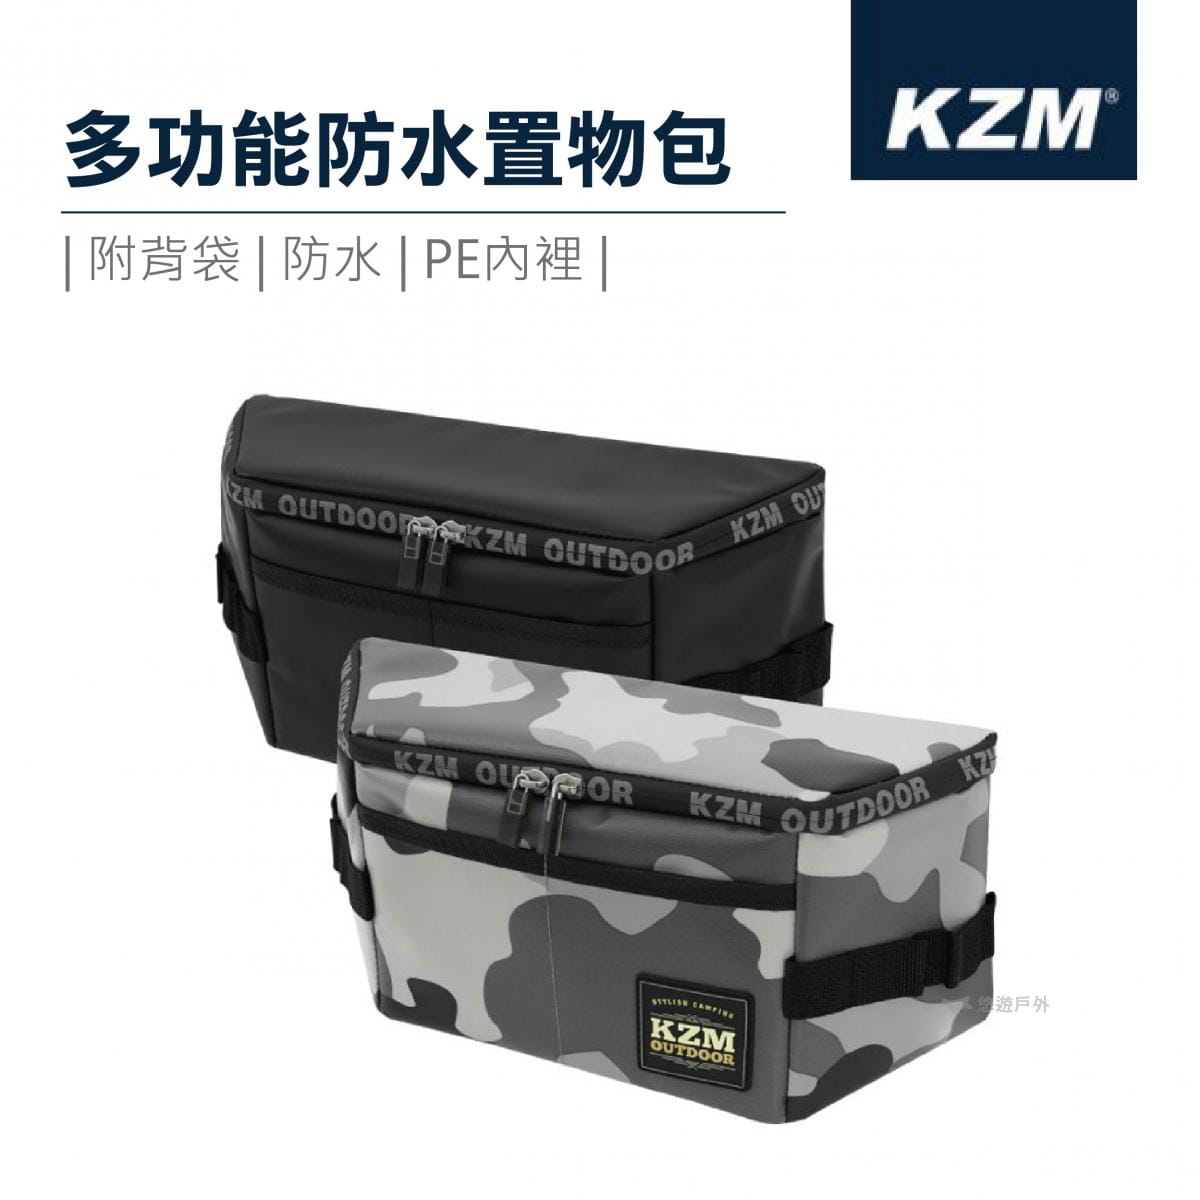 【悠遊戶外】KAZMI KZM 多功能防水置物包 K20T3Z004 0